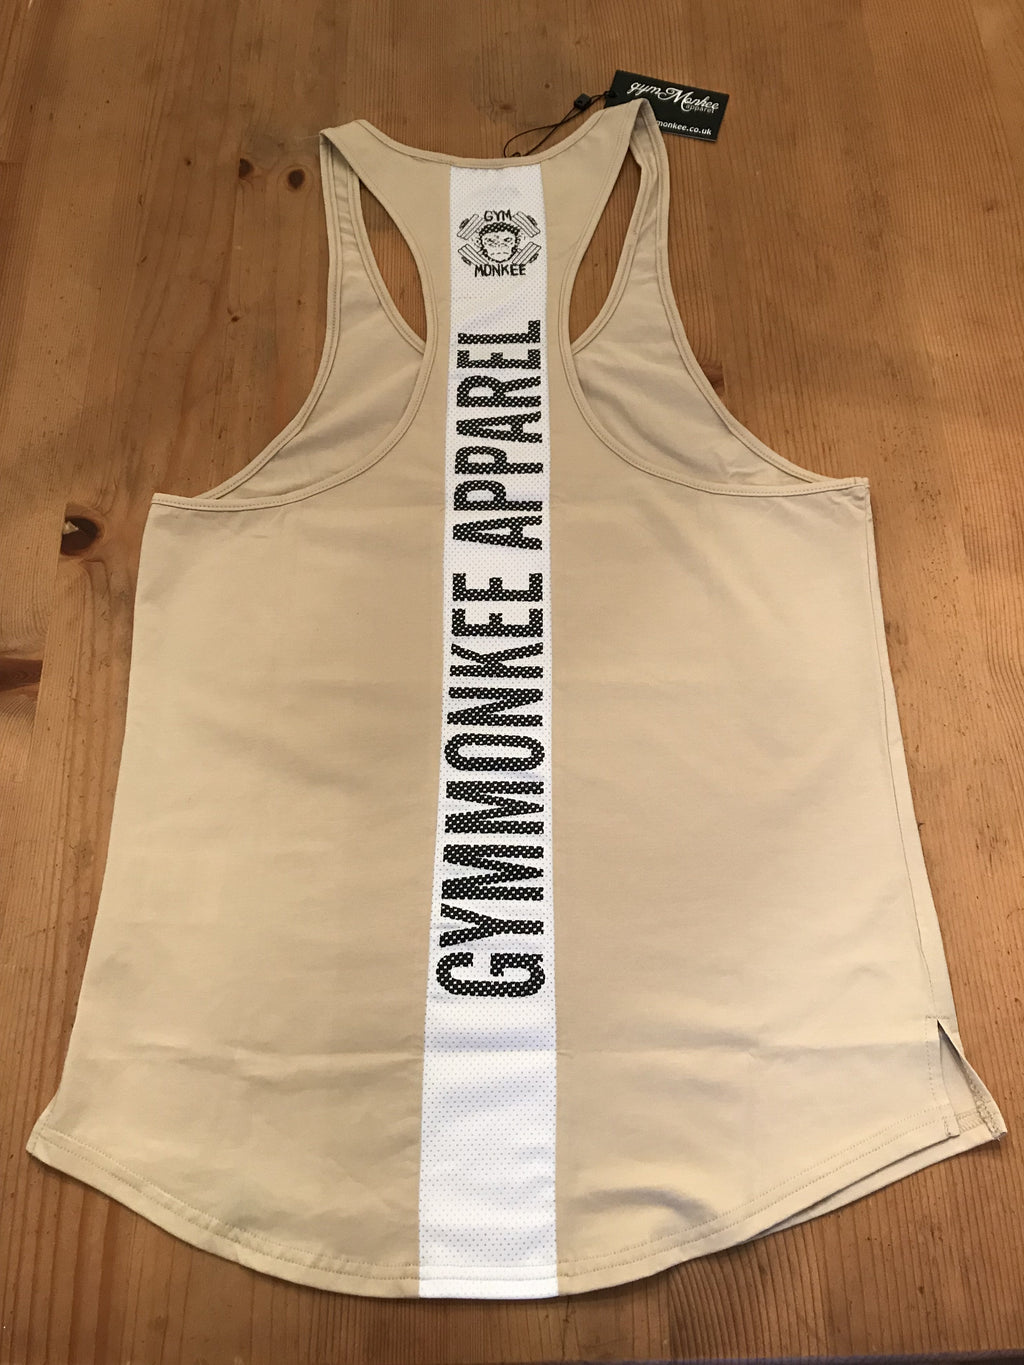 Gym Monkee - Beige Stealth Vest REVERSE